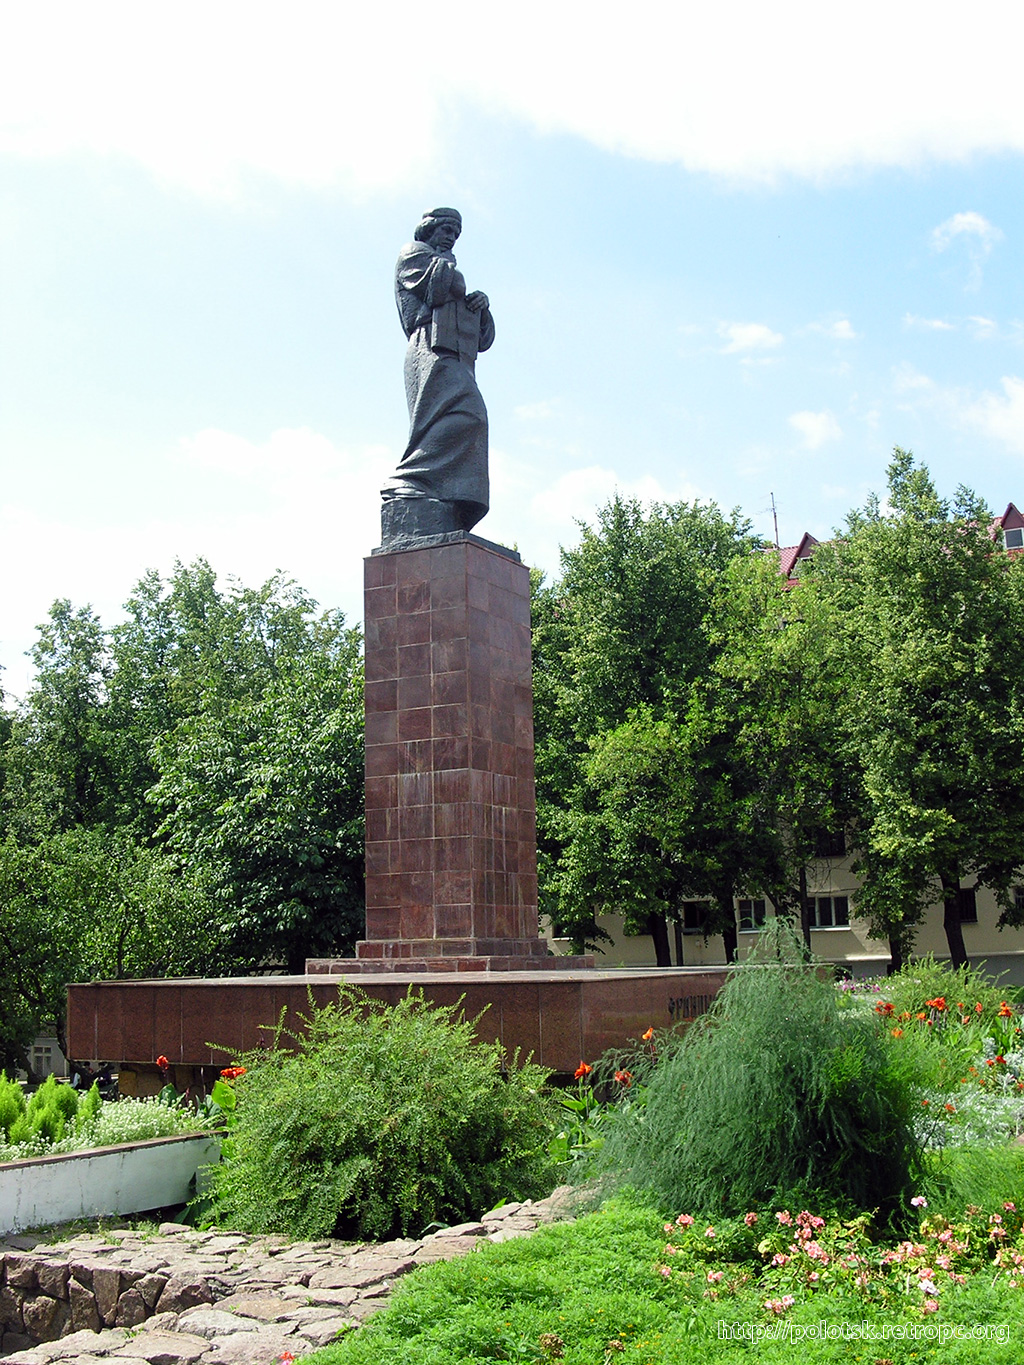 Памятник Франциску Скорине - фото 07-2006 года